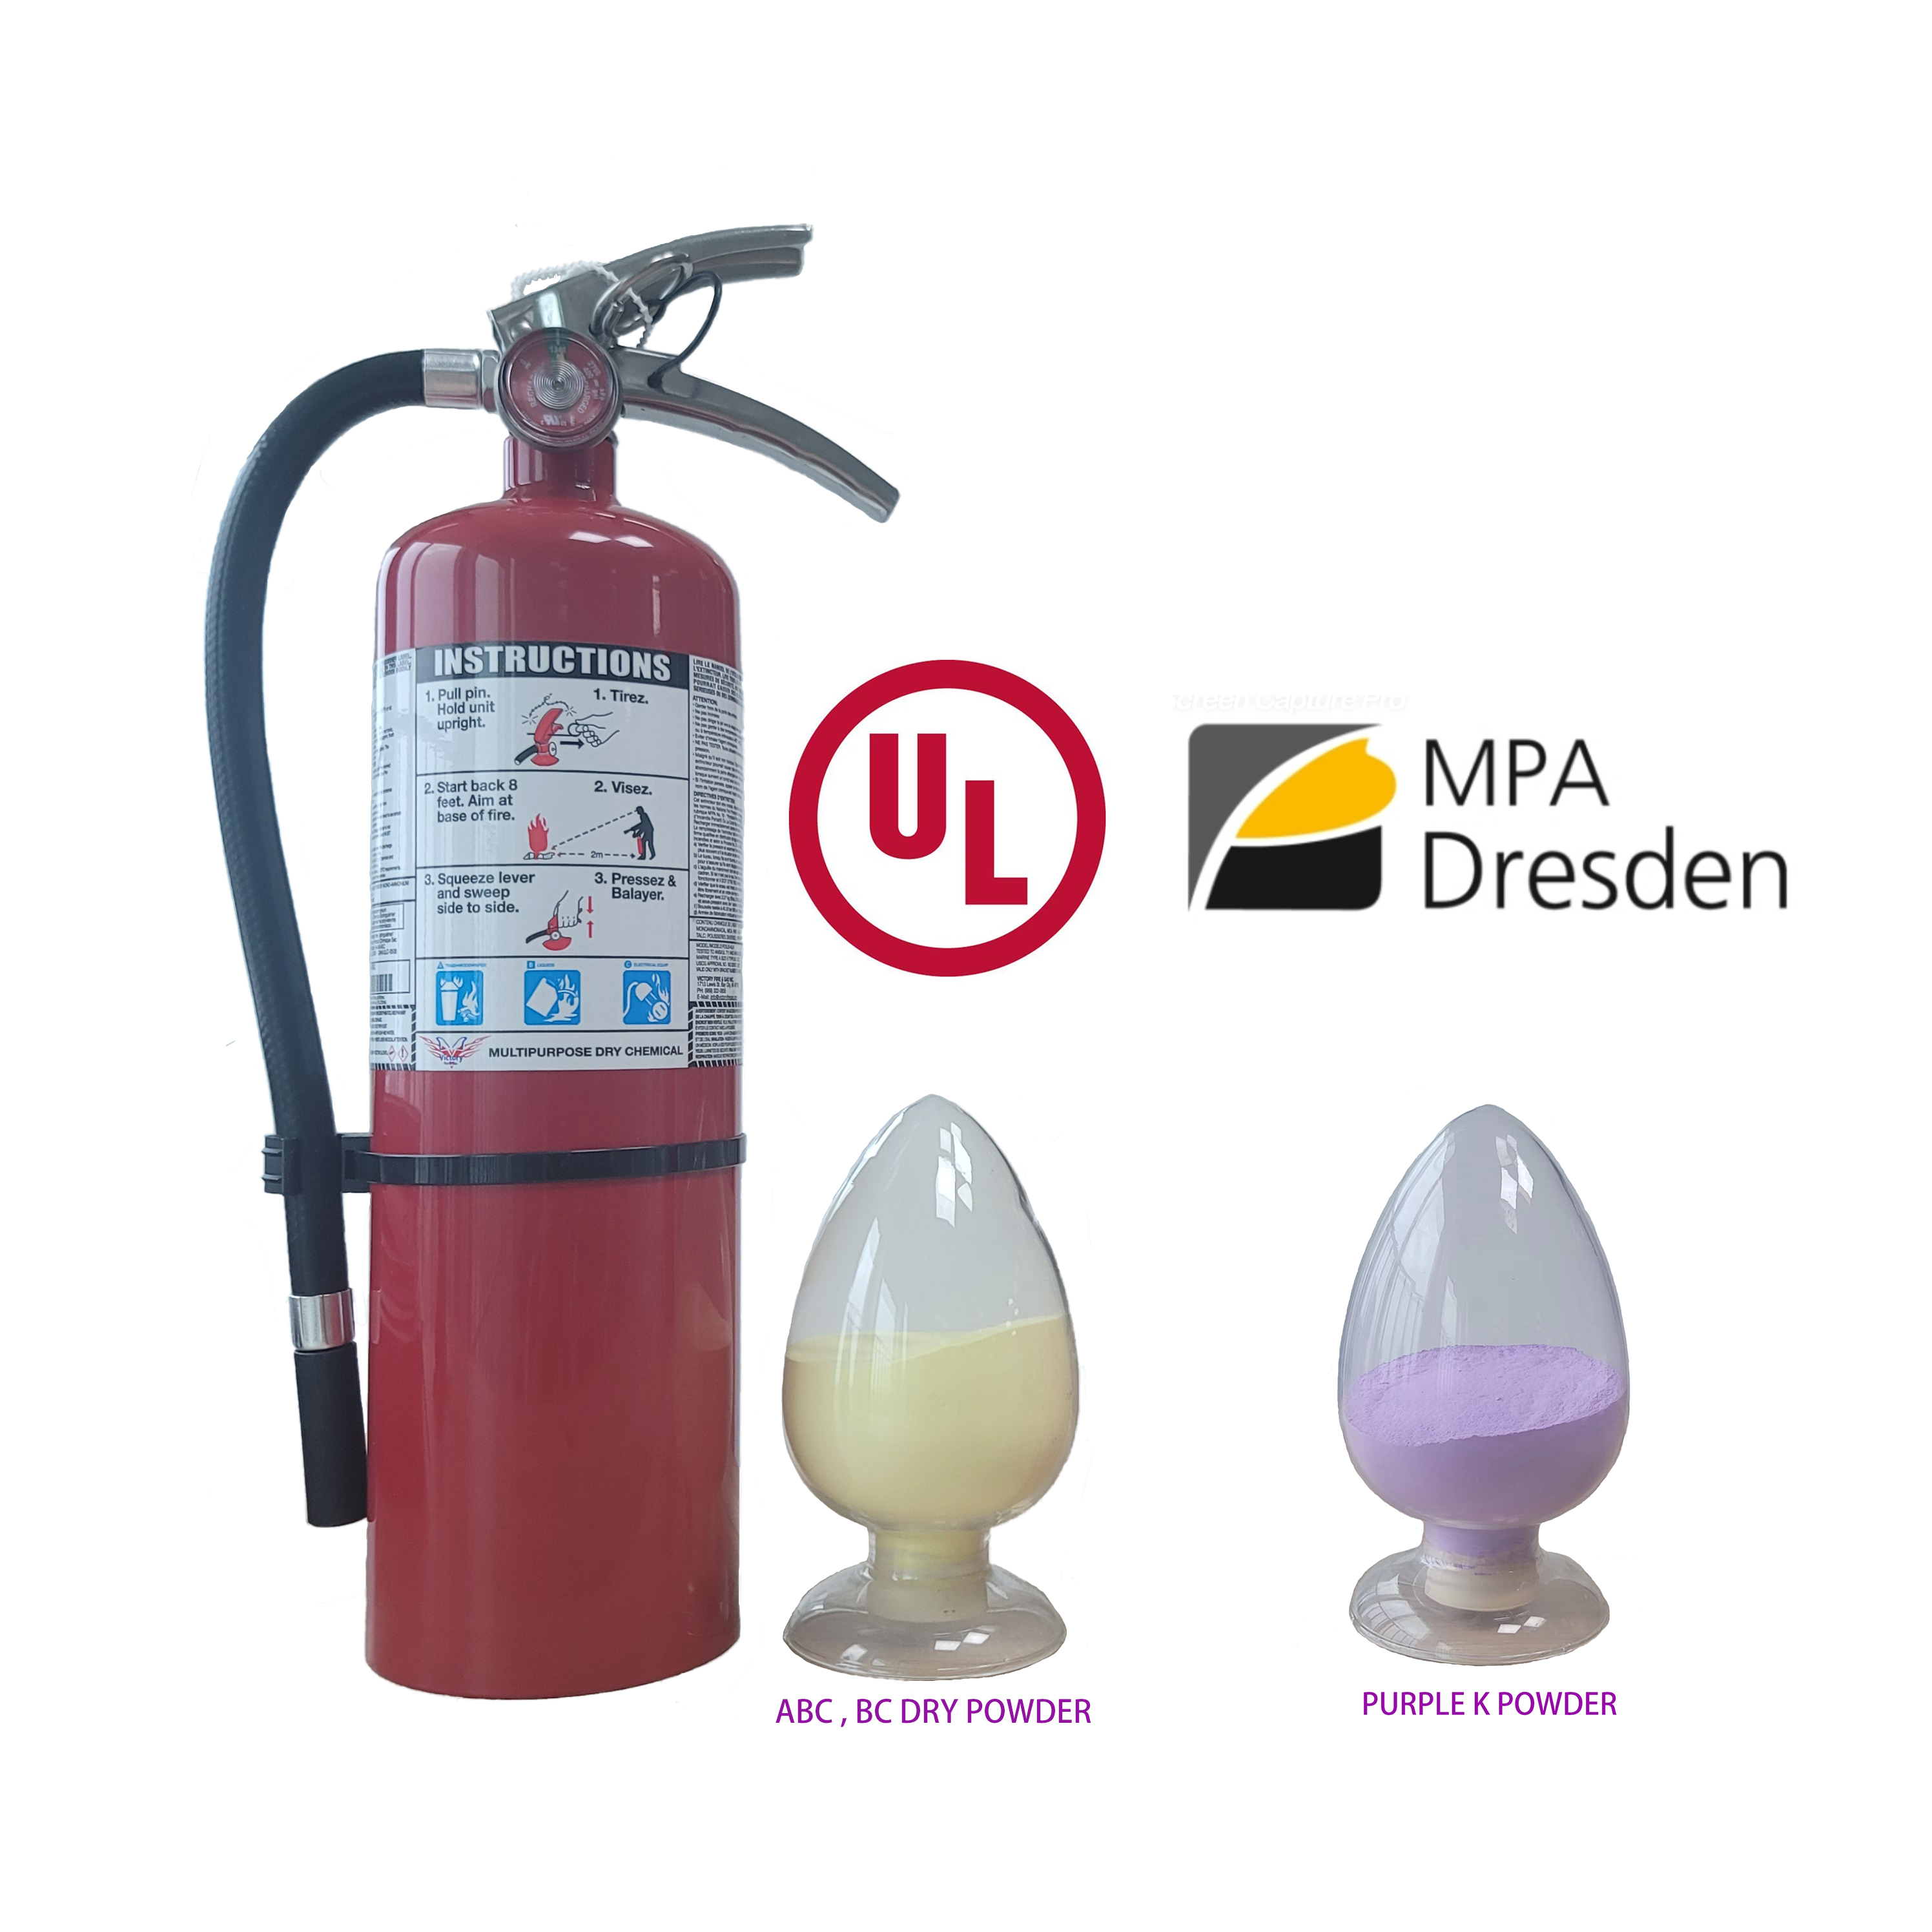 ABC dry powder fire extinguishers